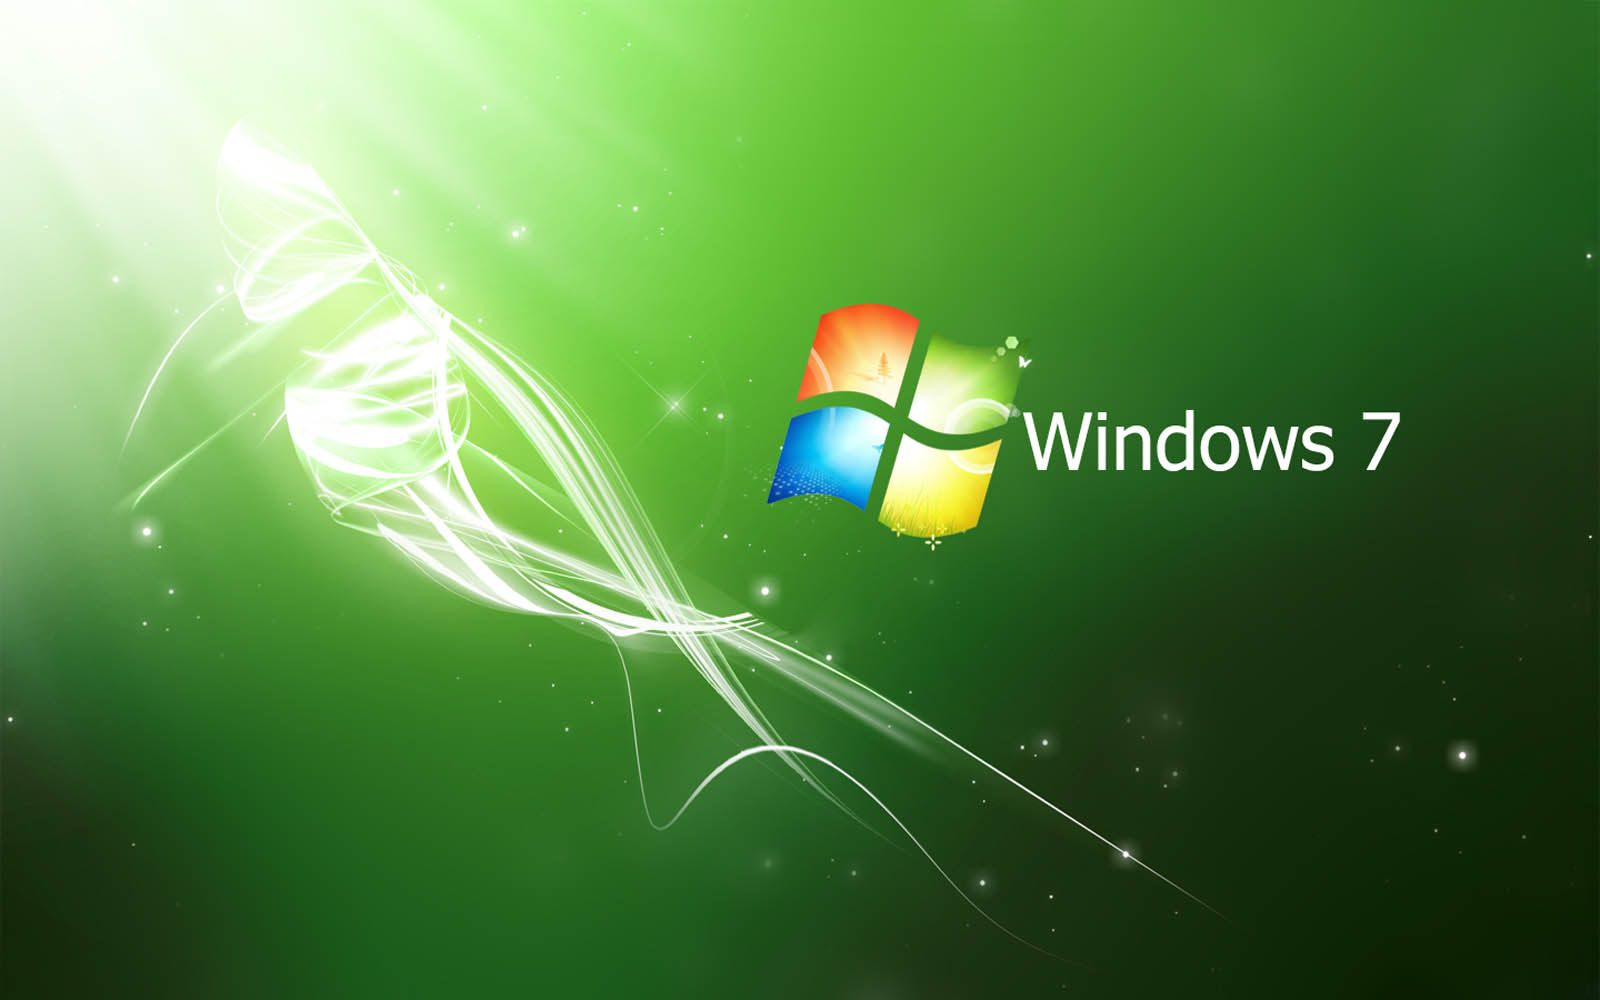 Tải ngay hình nền miễn phí cho máy tính của bạn! Chúng tôi cung cấp hình nền Windows 7 được thiết kế đẹp mắt để bạn có thể thay đổi giao diện máy tính của mình một cách đơn giản và dễ dàng. Đừng bỏ lỡ cơ hội tải về miễn phí và trang trí cho máy tính của bạn thật lung linh!